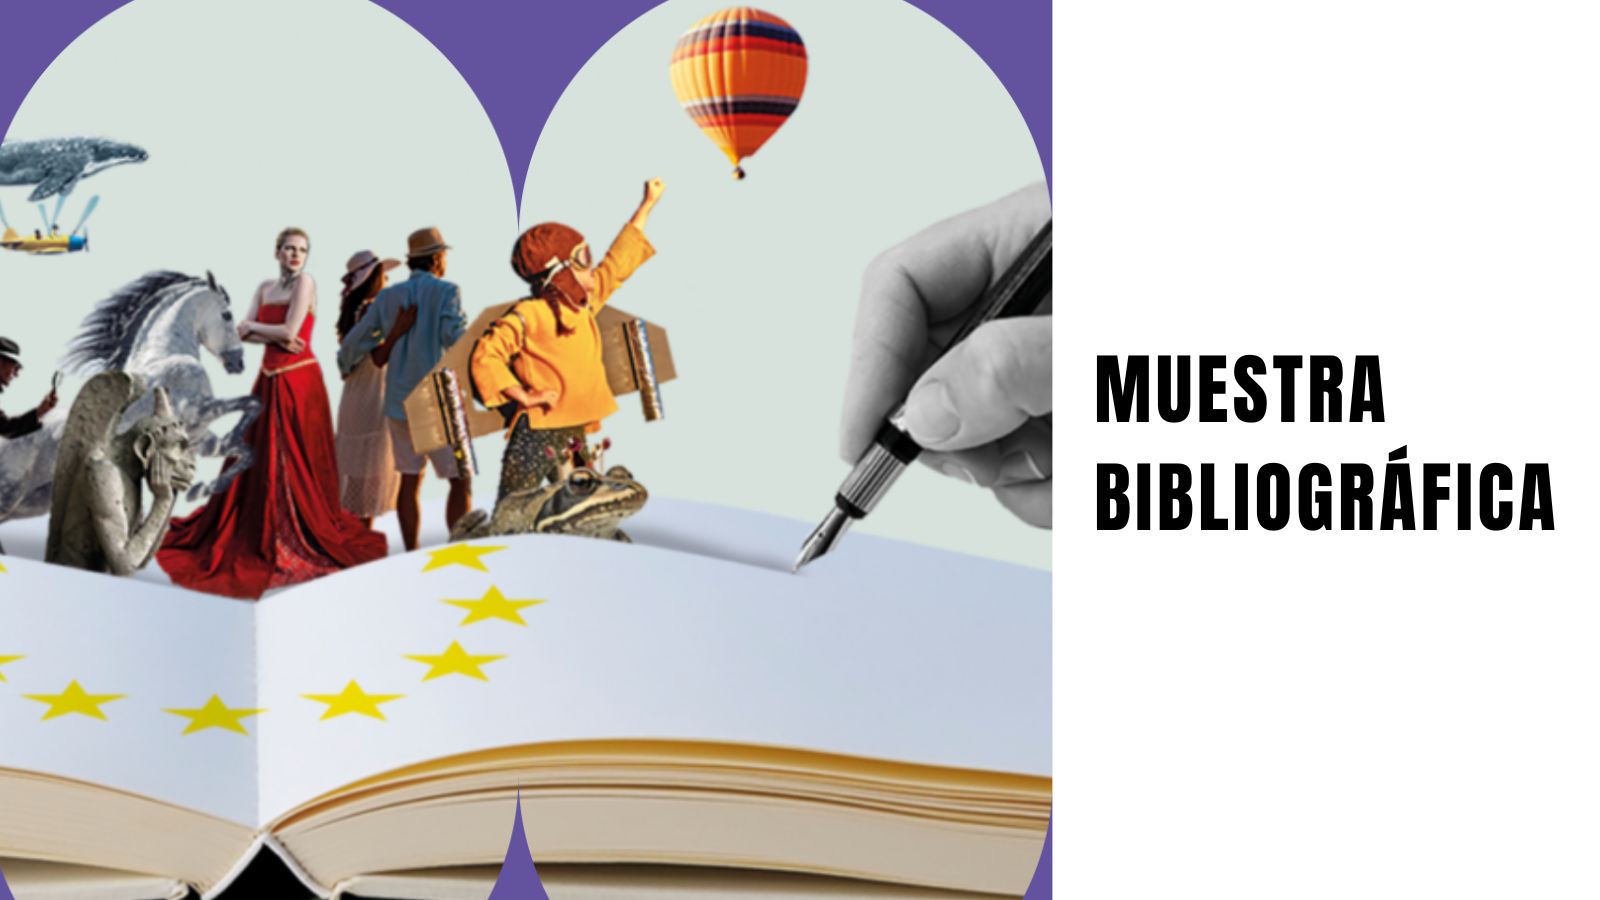 Muestra bibliográfica "Los autores europeos de nuestras estanterías"